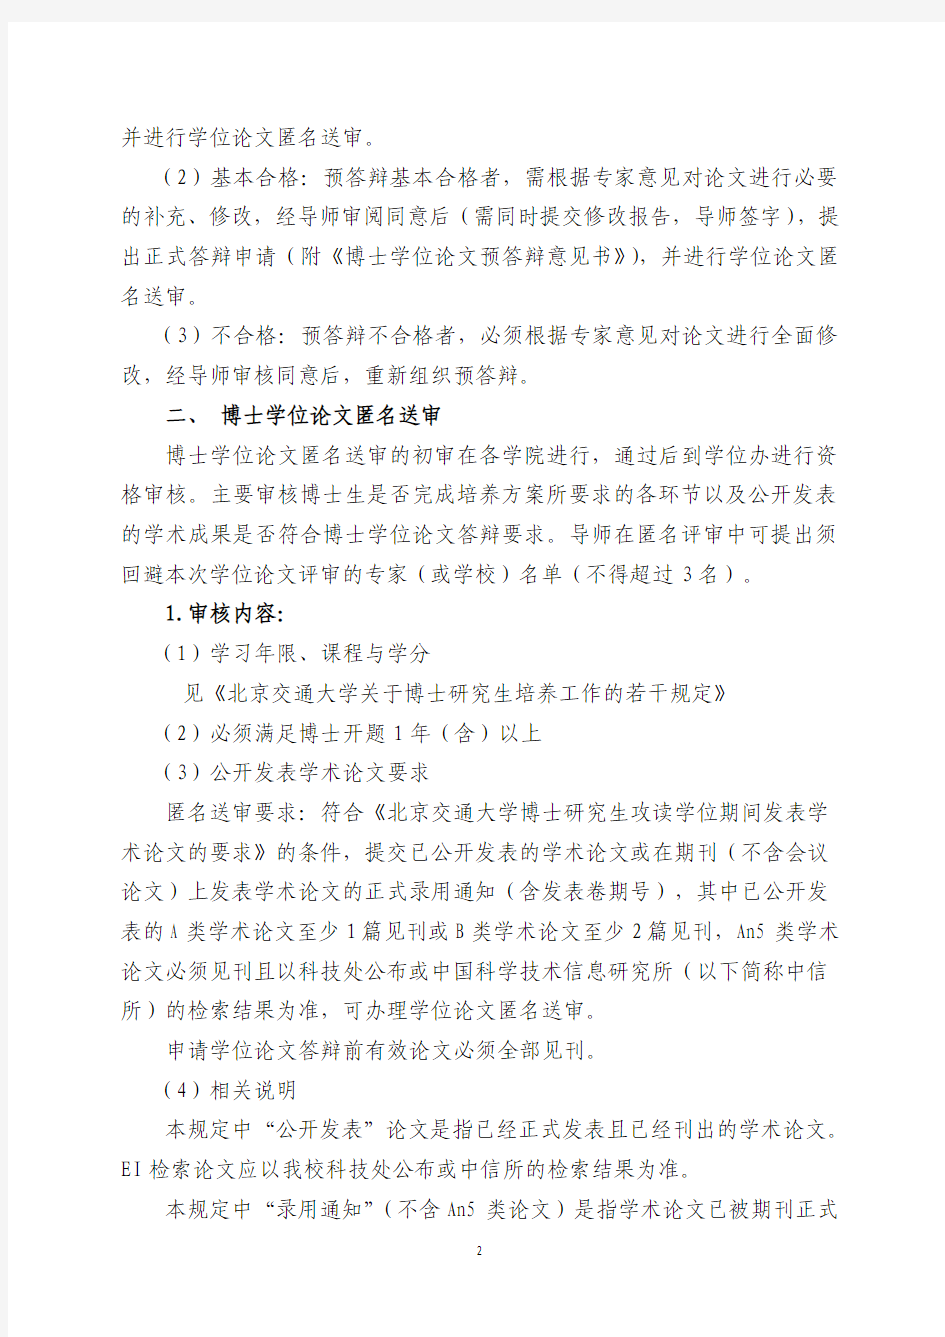 北京交通大学博士学位论文答辩及学位申请若干规定